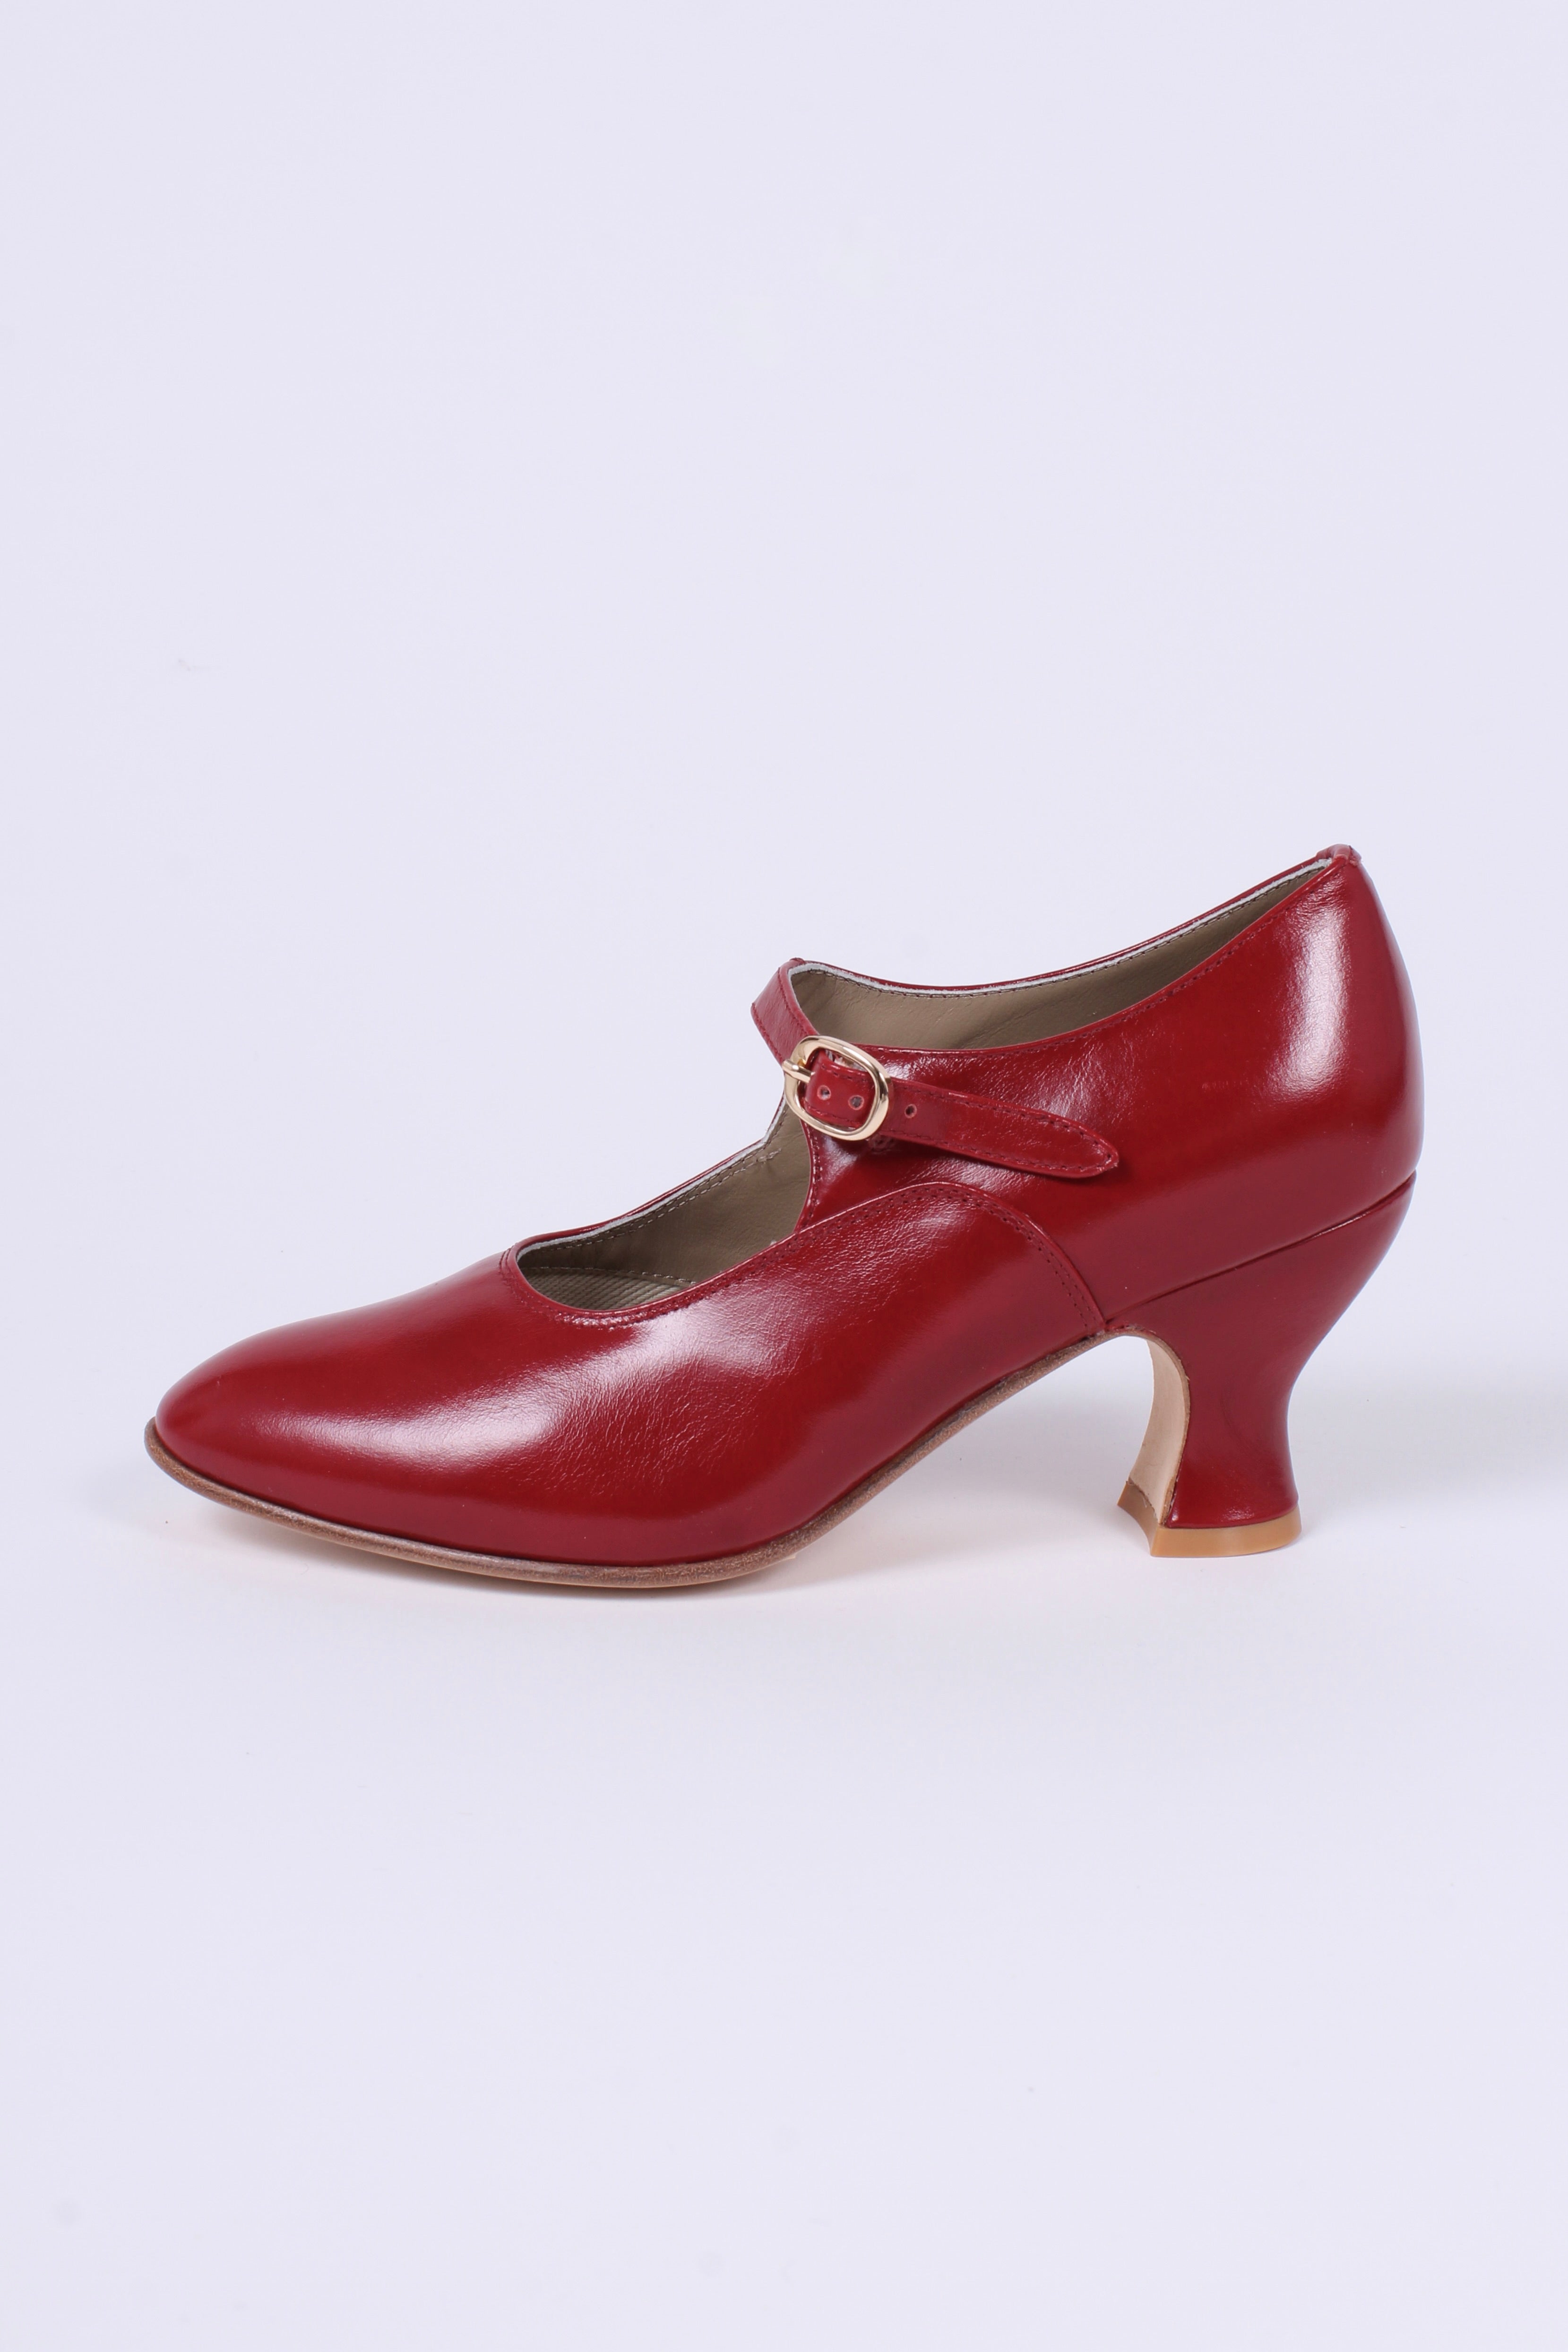 1920'er vintage style pumps med pompadour hæl - Rød - Yvonne